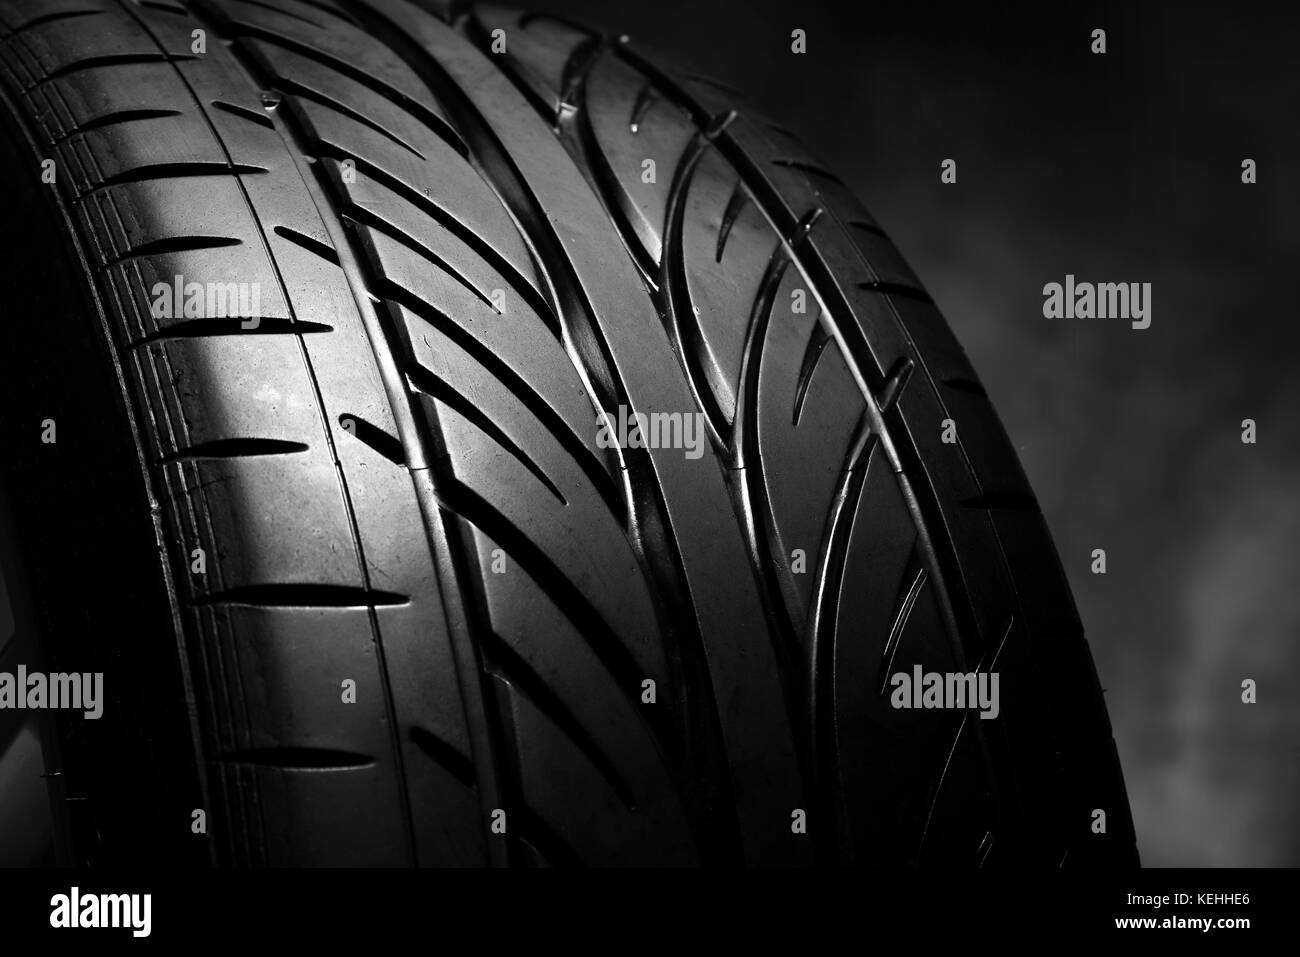 Auto Reifen auf einem dunklen Hintergrund. Stockfoto